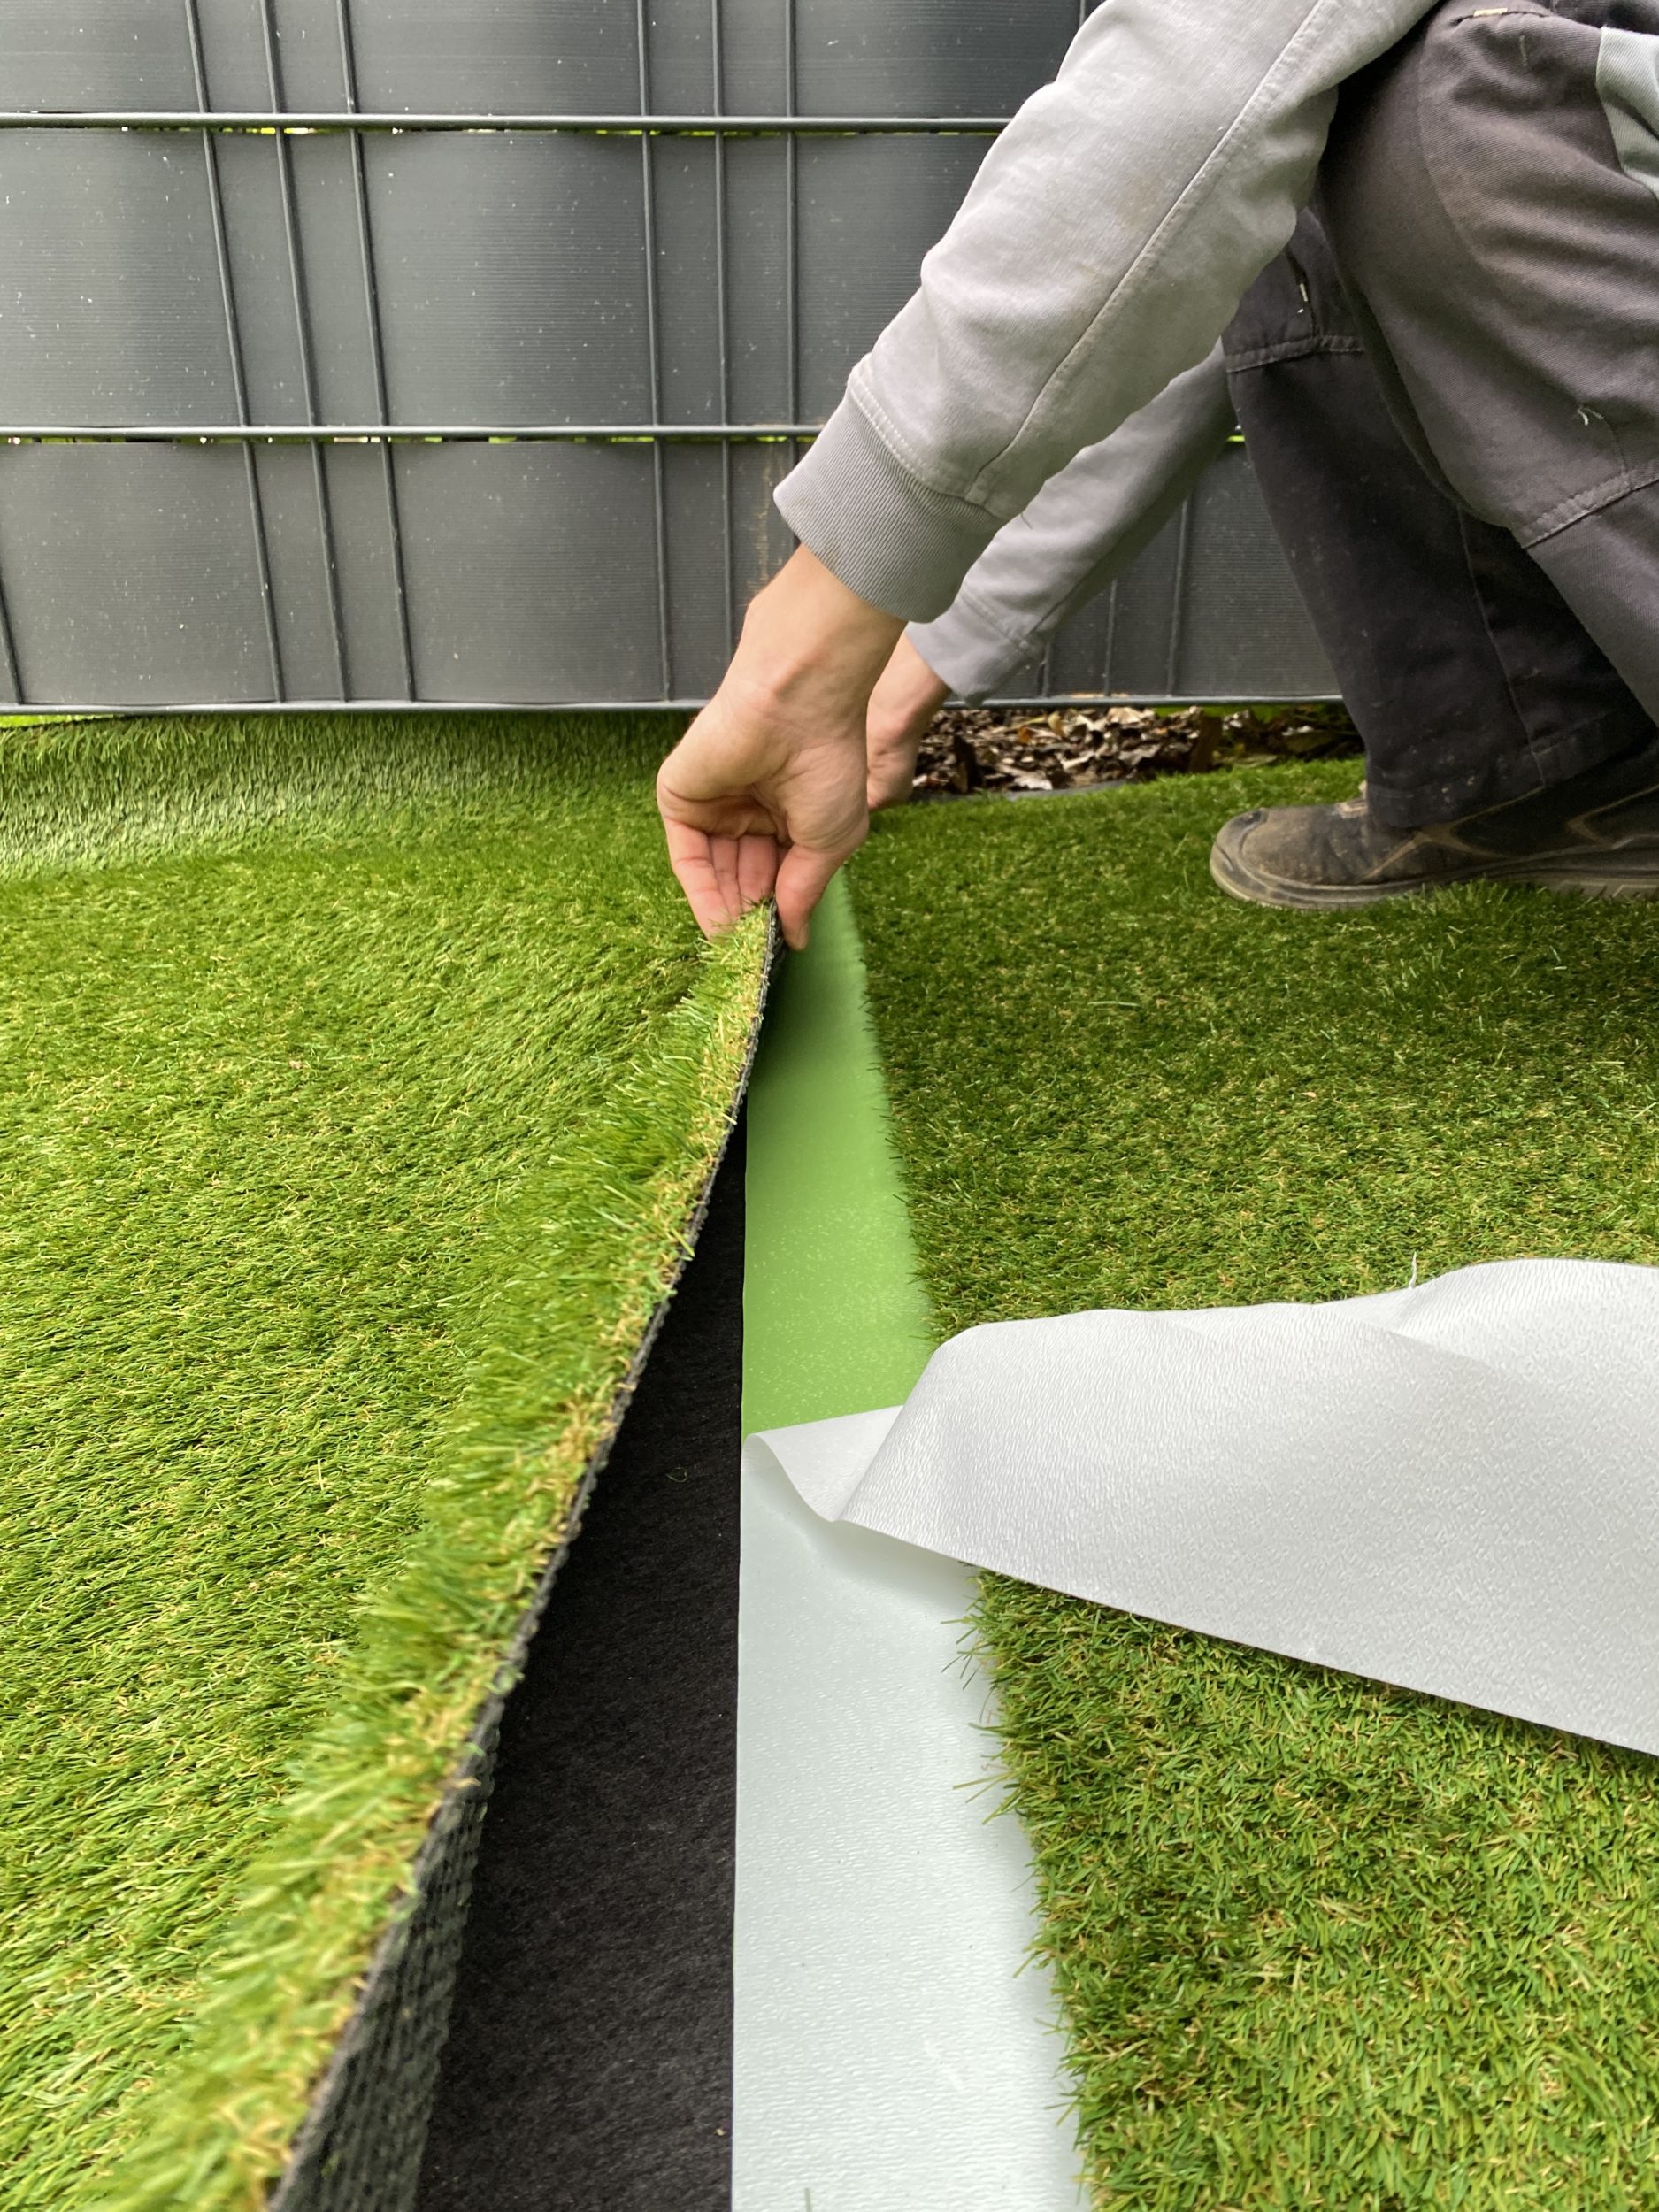 grün SUPERTOOL 150 mm x 10 m Kunstrasenband Rasenband Gras Teppich Gras Klebeband Rasenband 